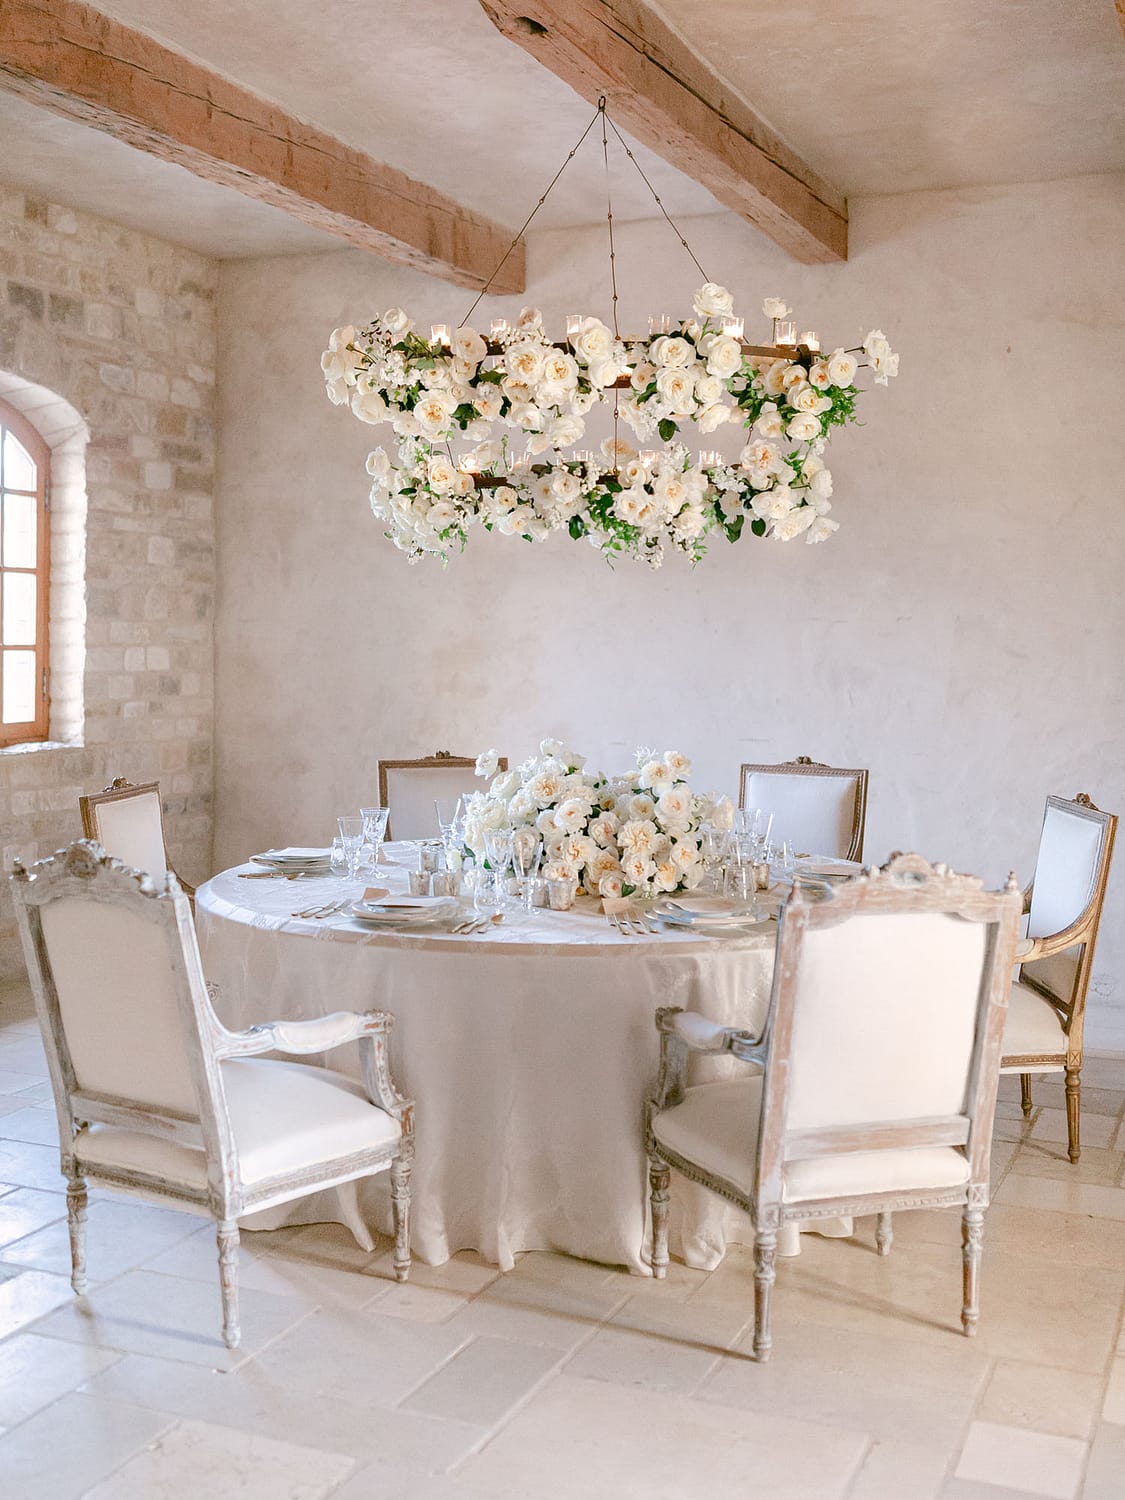 Arrangement de table complet de roses de mariage David Austin